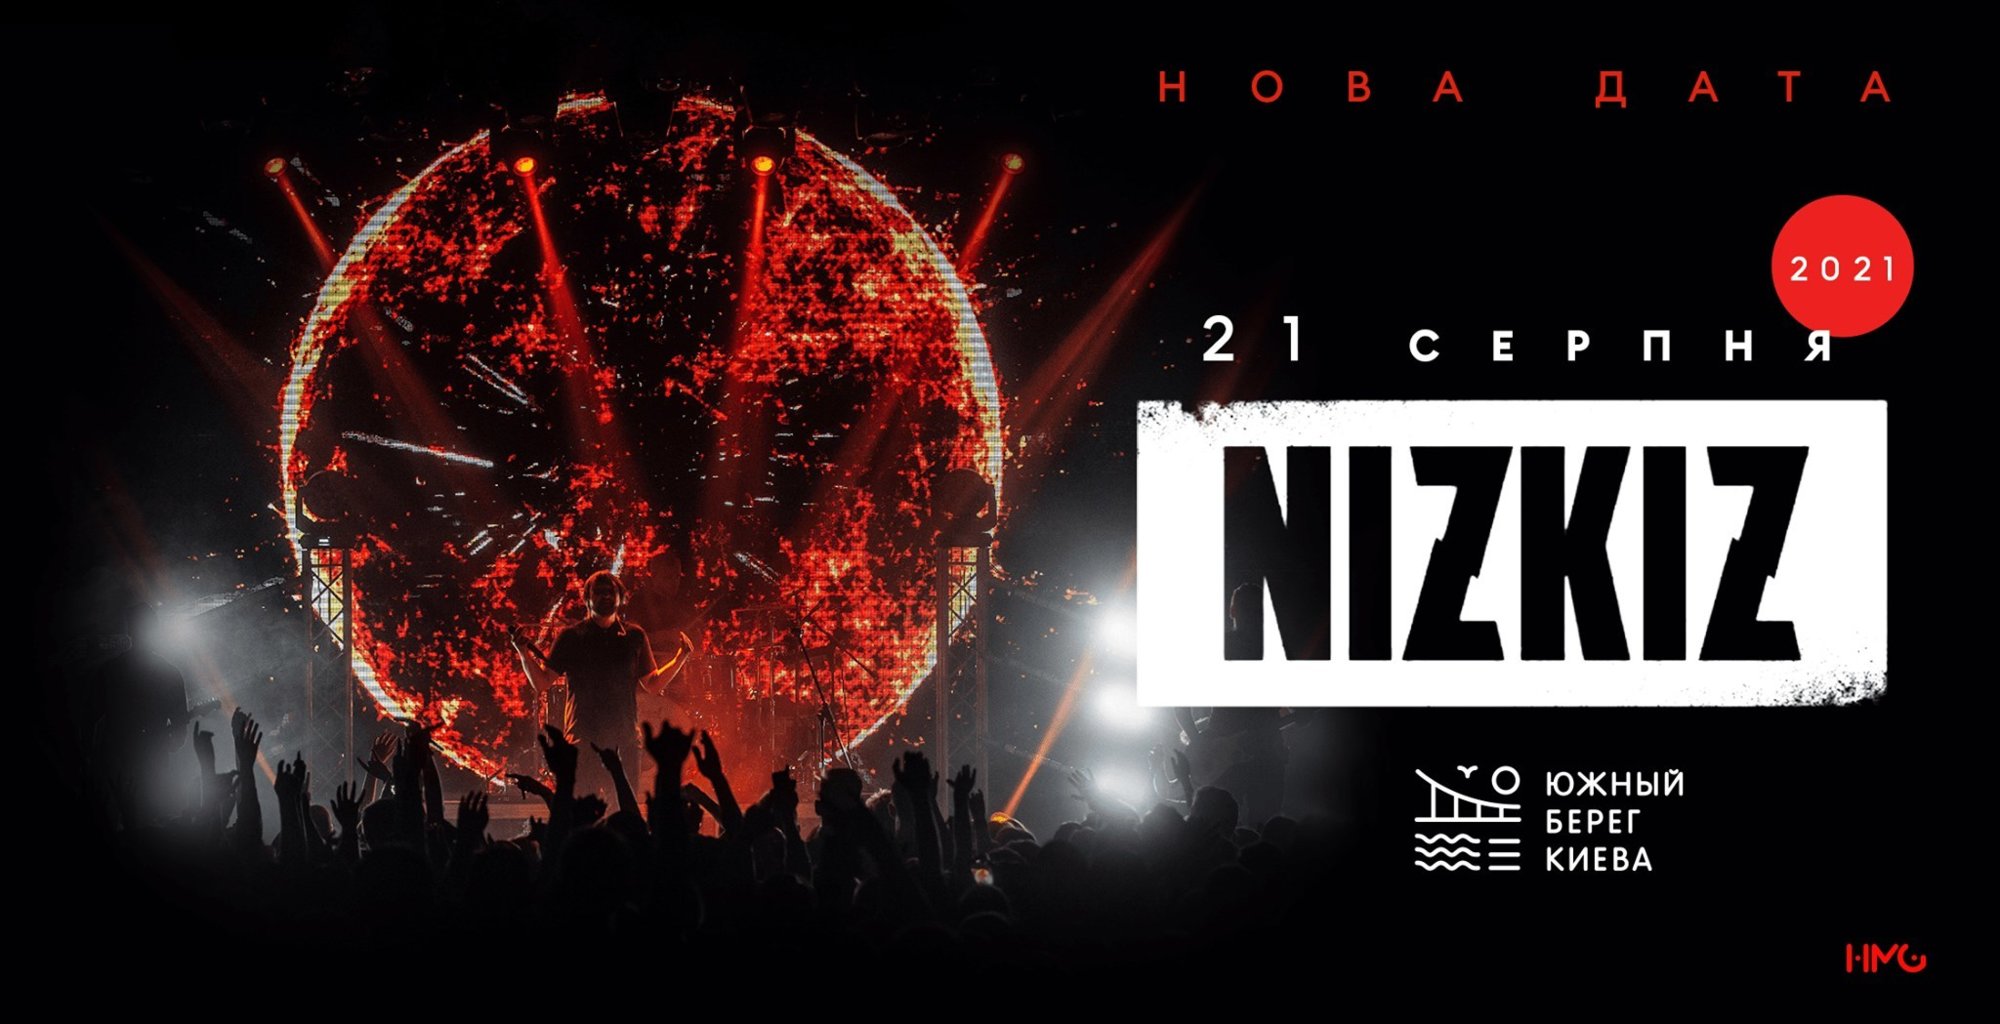 Концерт "Nizkiz"